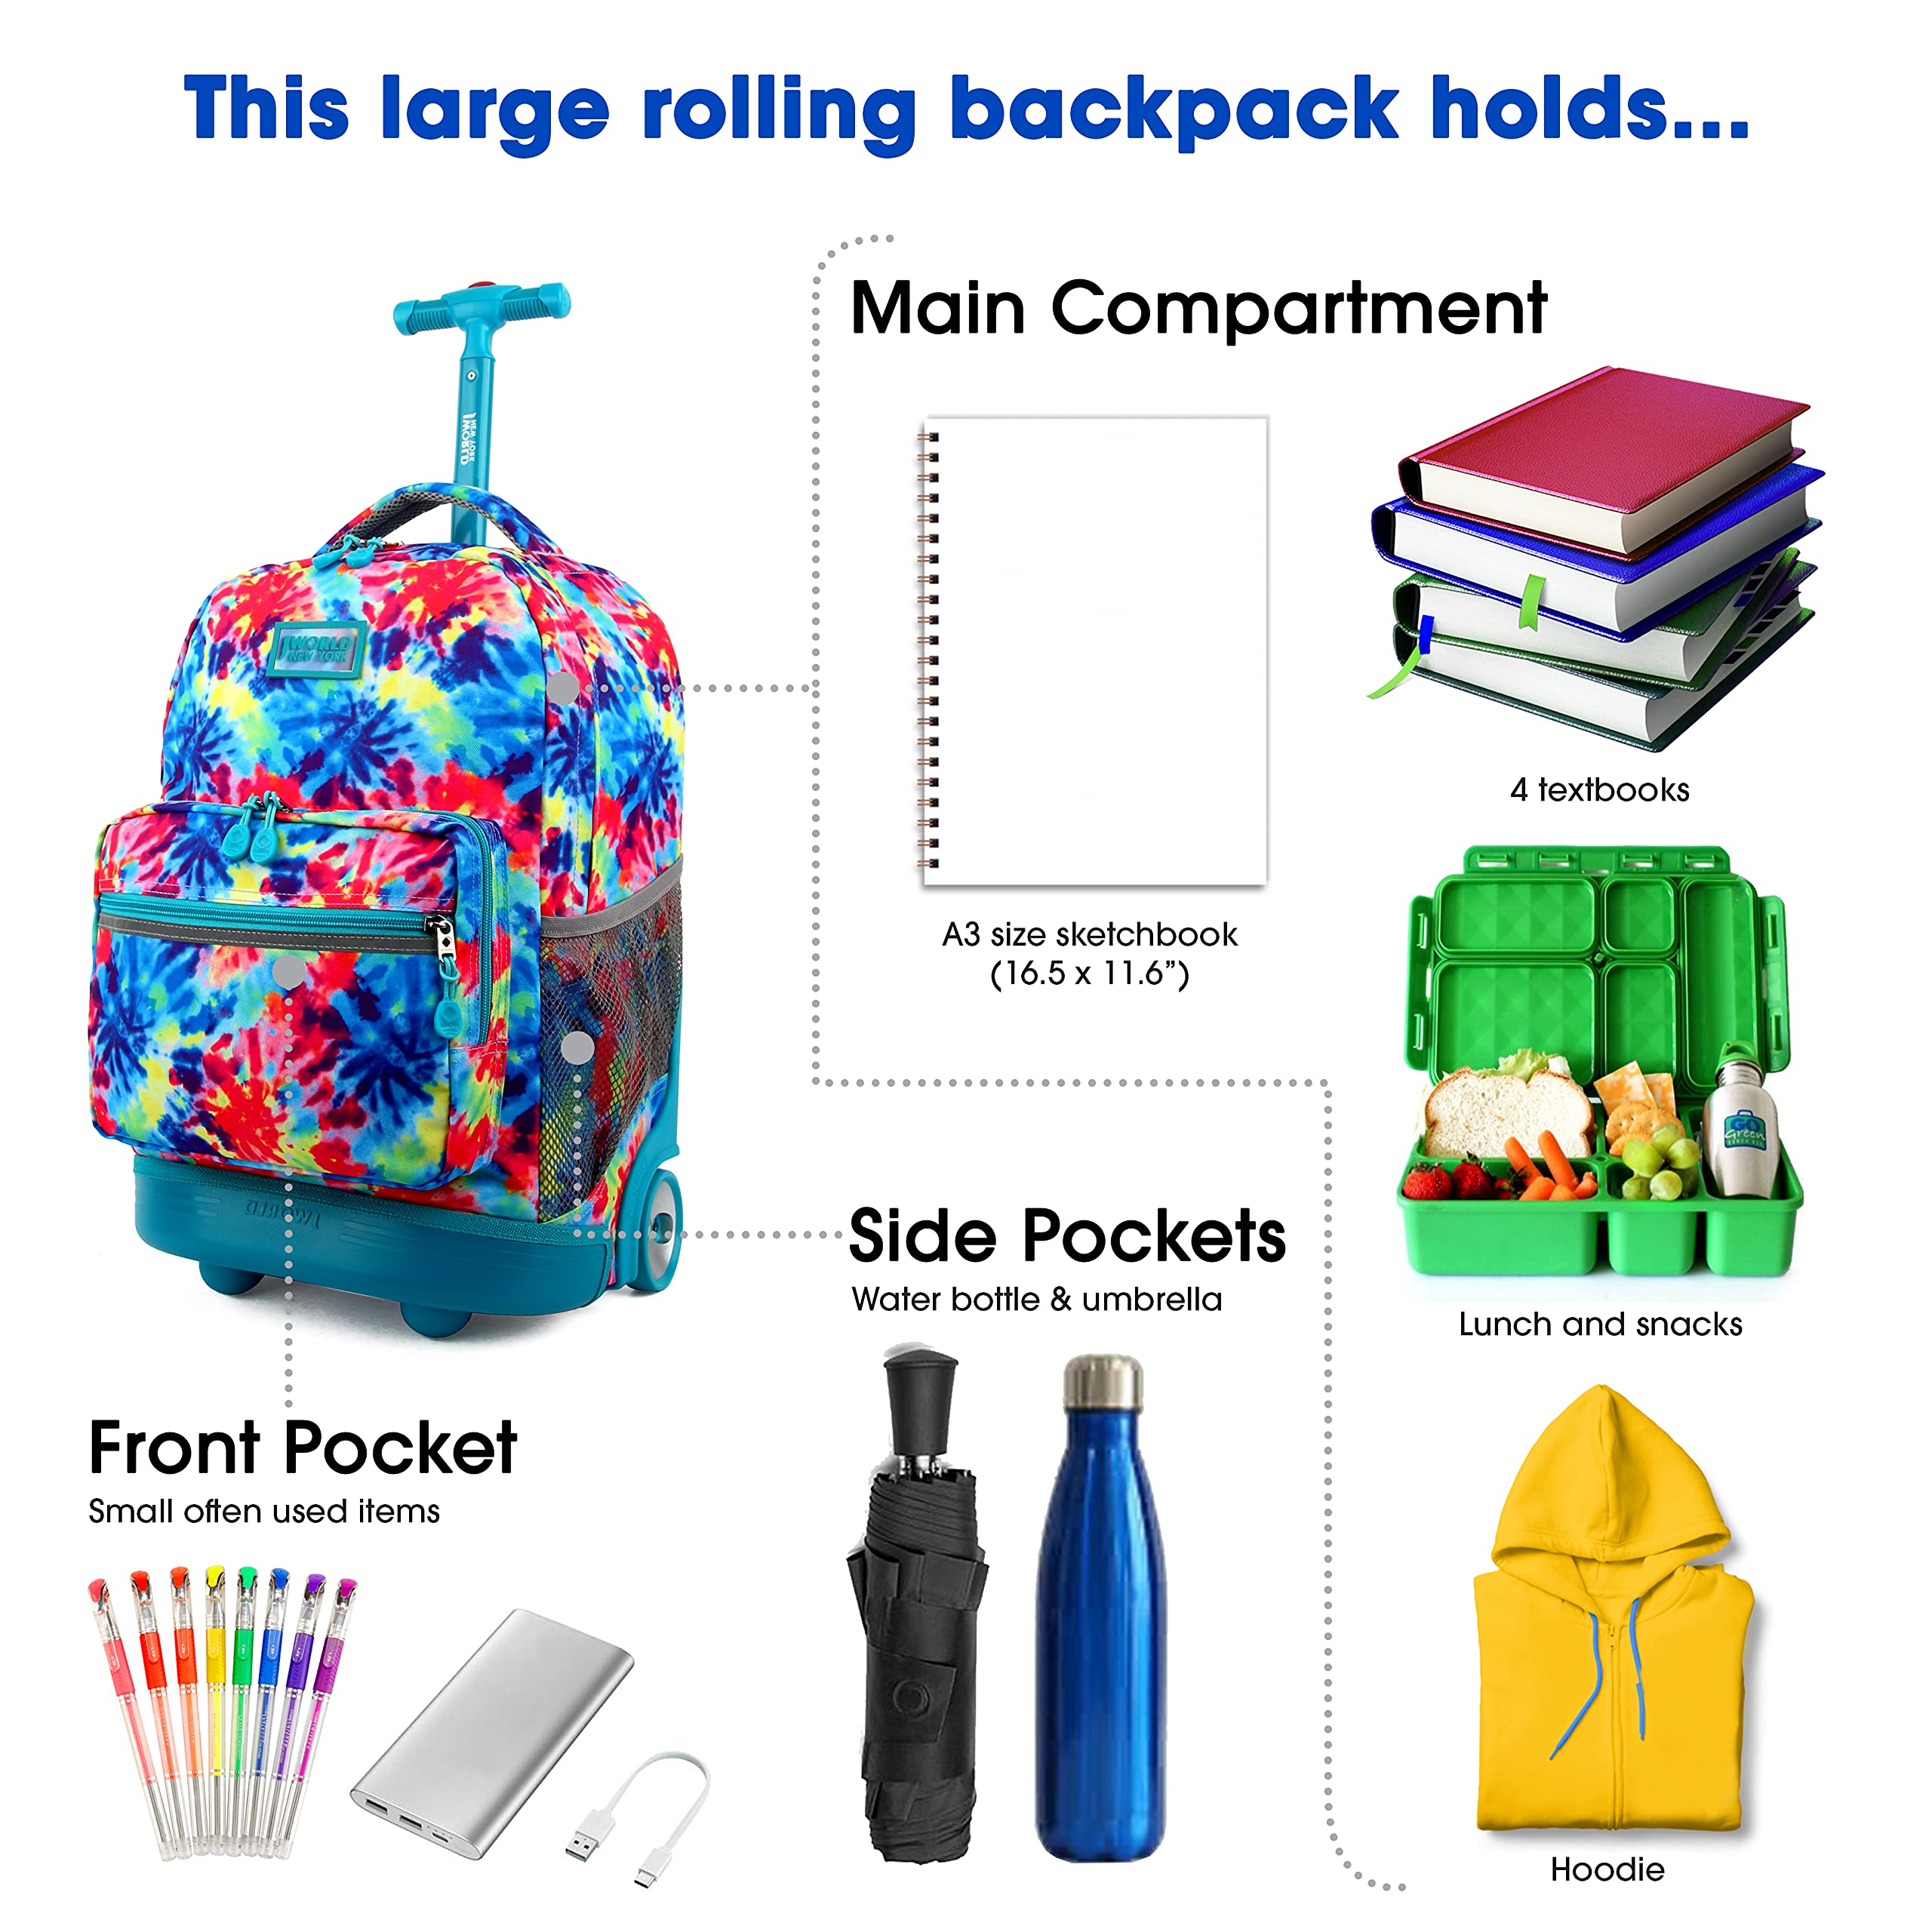 J World New York Sunrise Kids Rolling Backpack for Girls Boys Teen. Roller Bookbag with Wheels, Tie Dye, 18